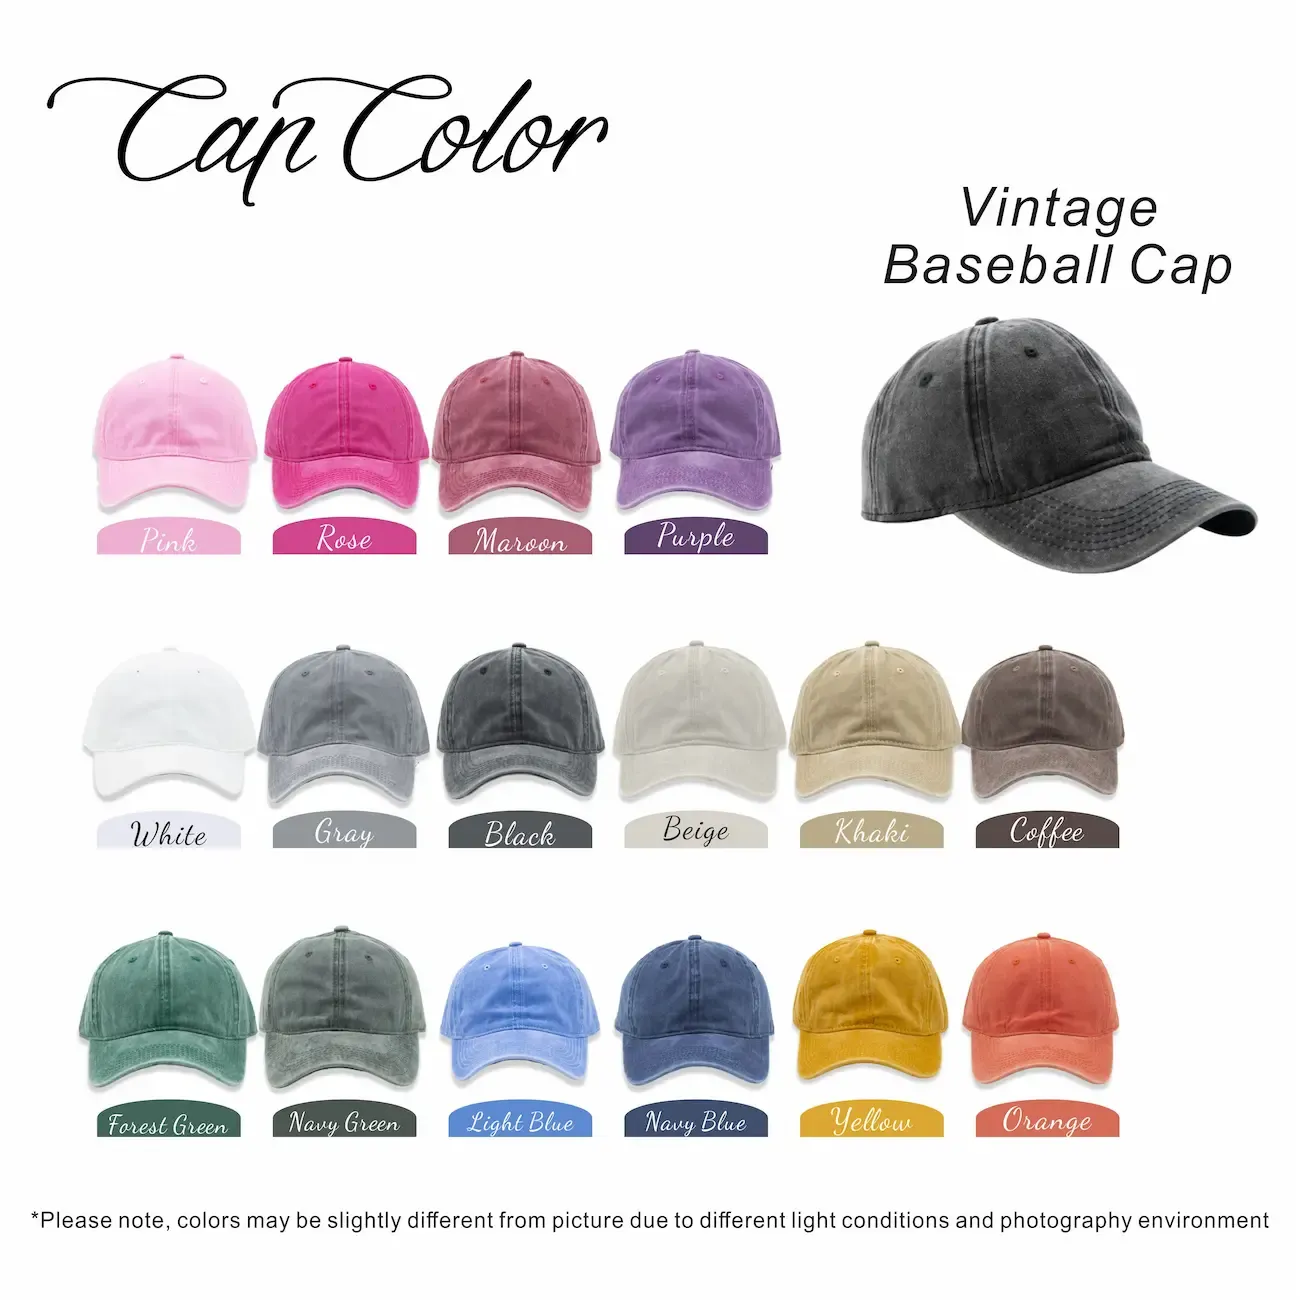 Custom Baseball Caps, Baseball Caps for Women, Men's Hats, Green Hat